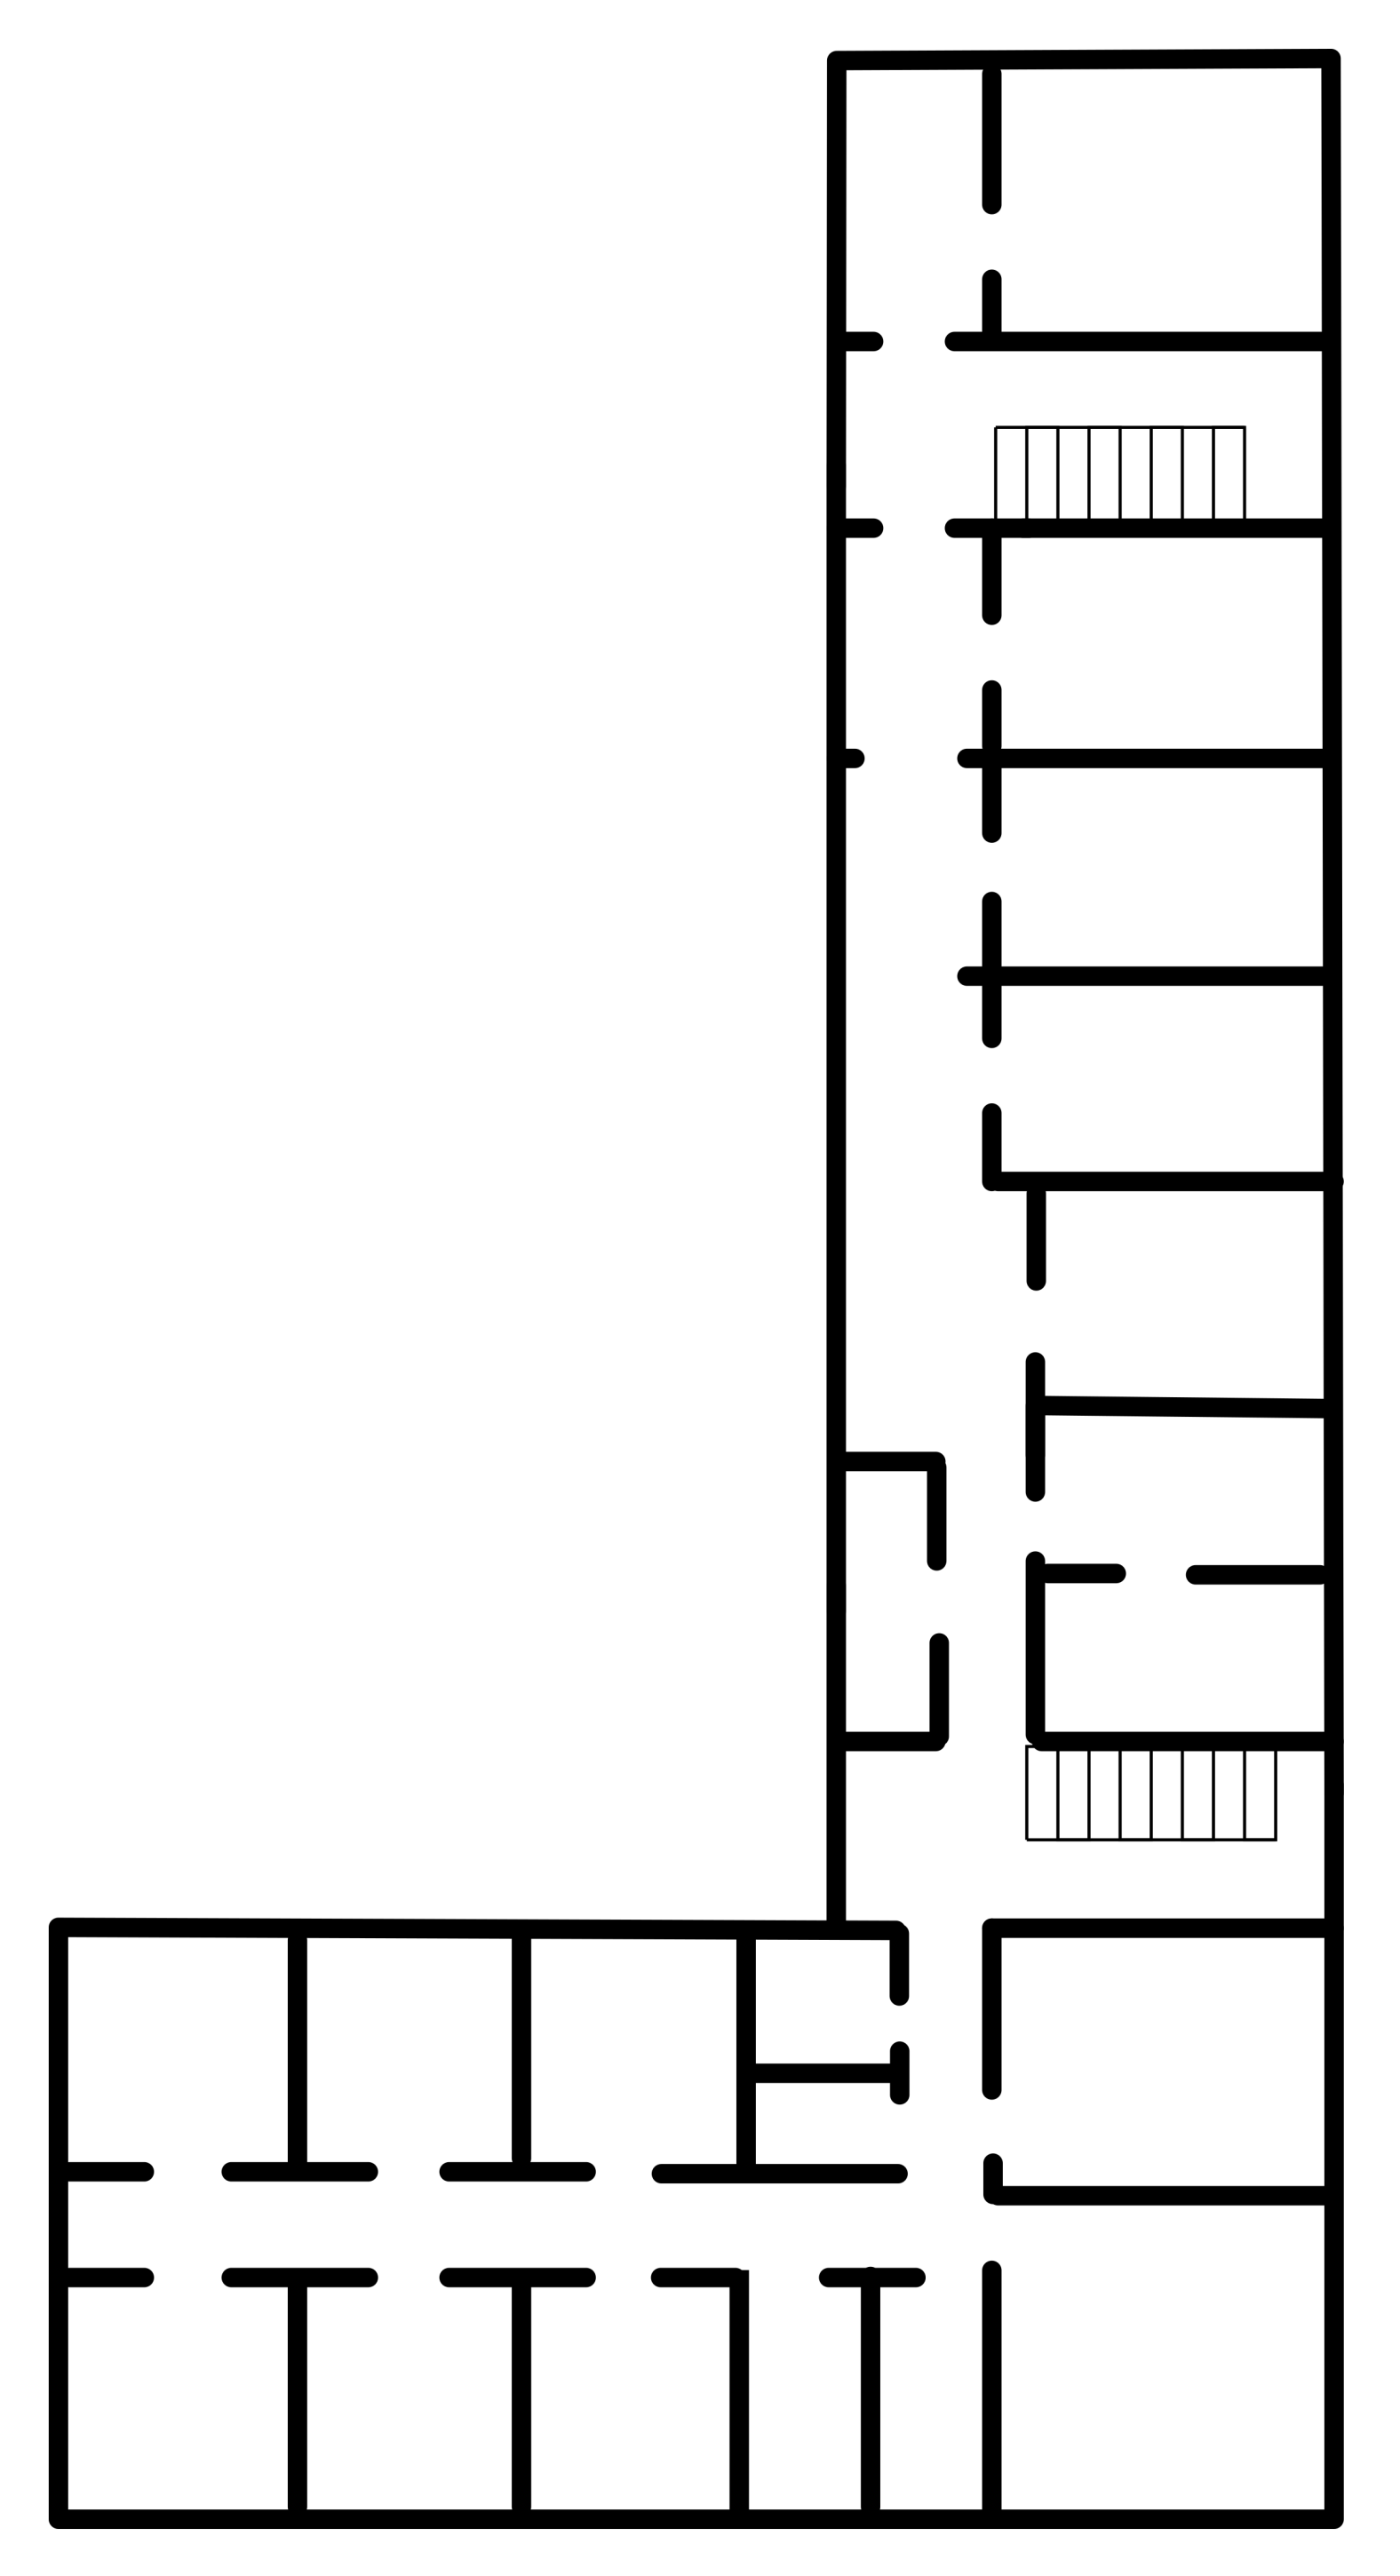 Schemat 3 piętra